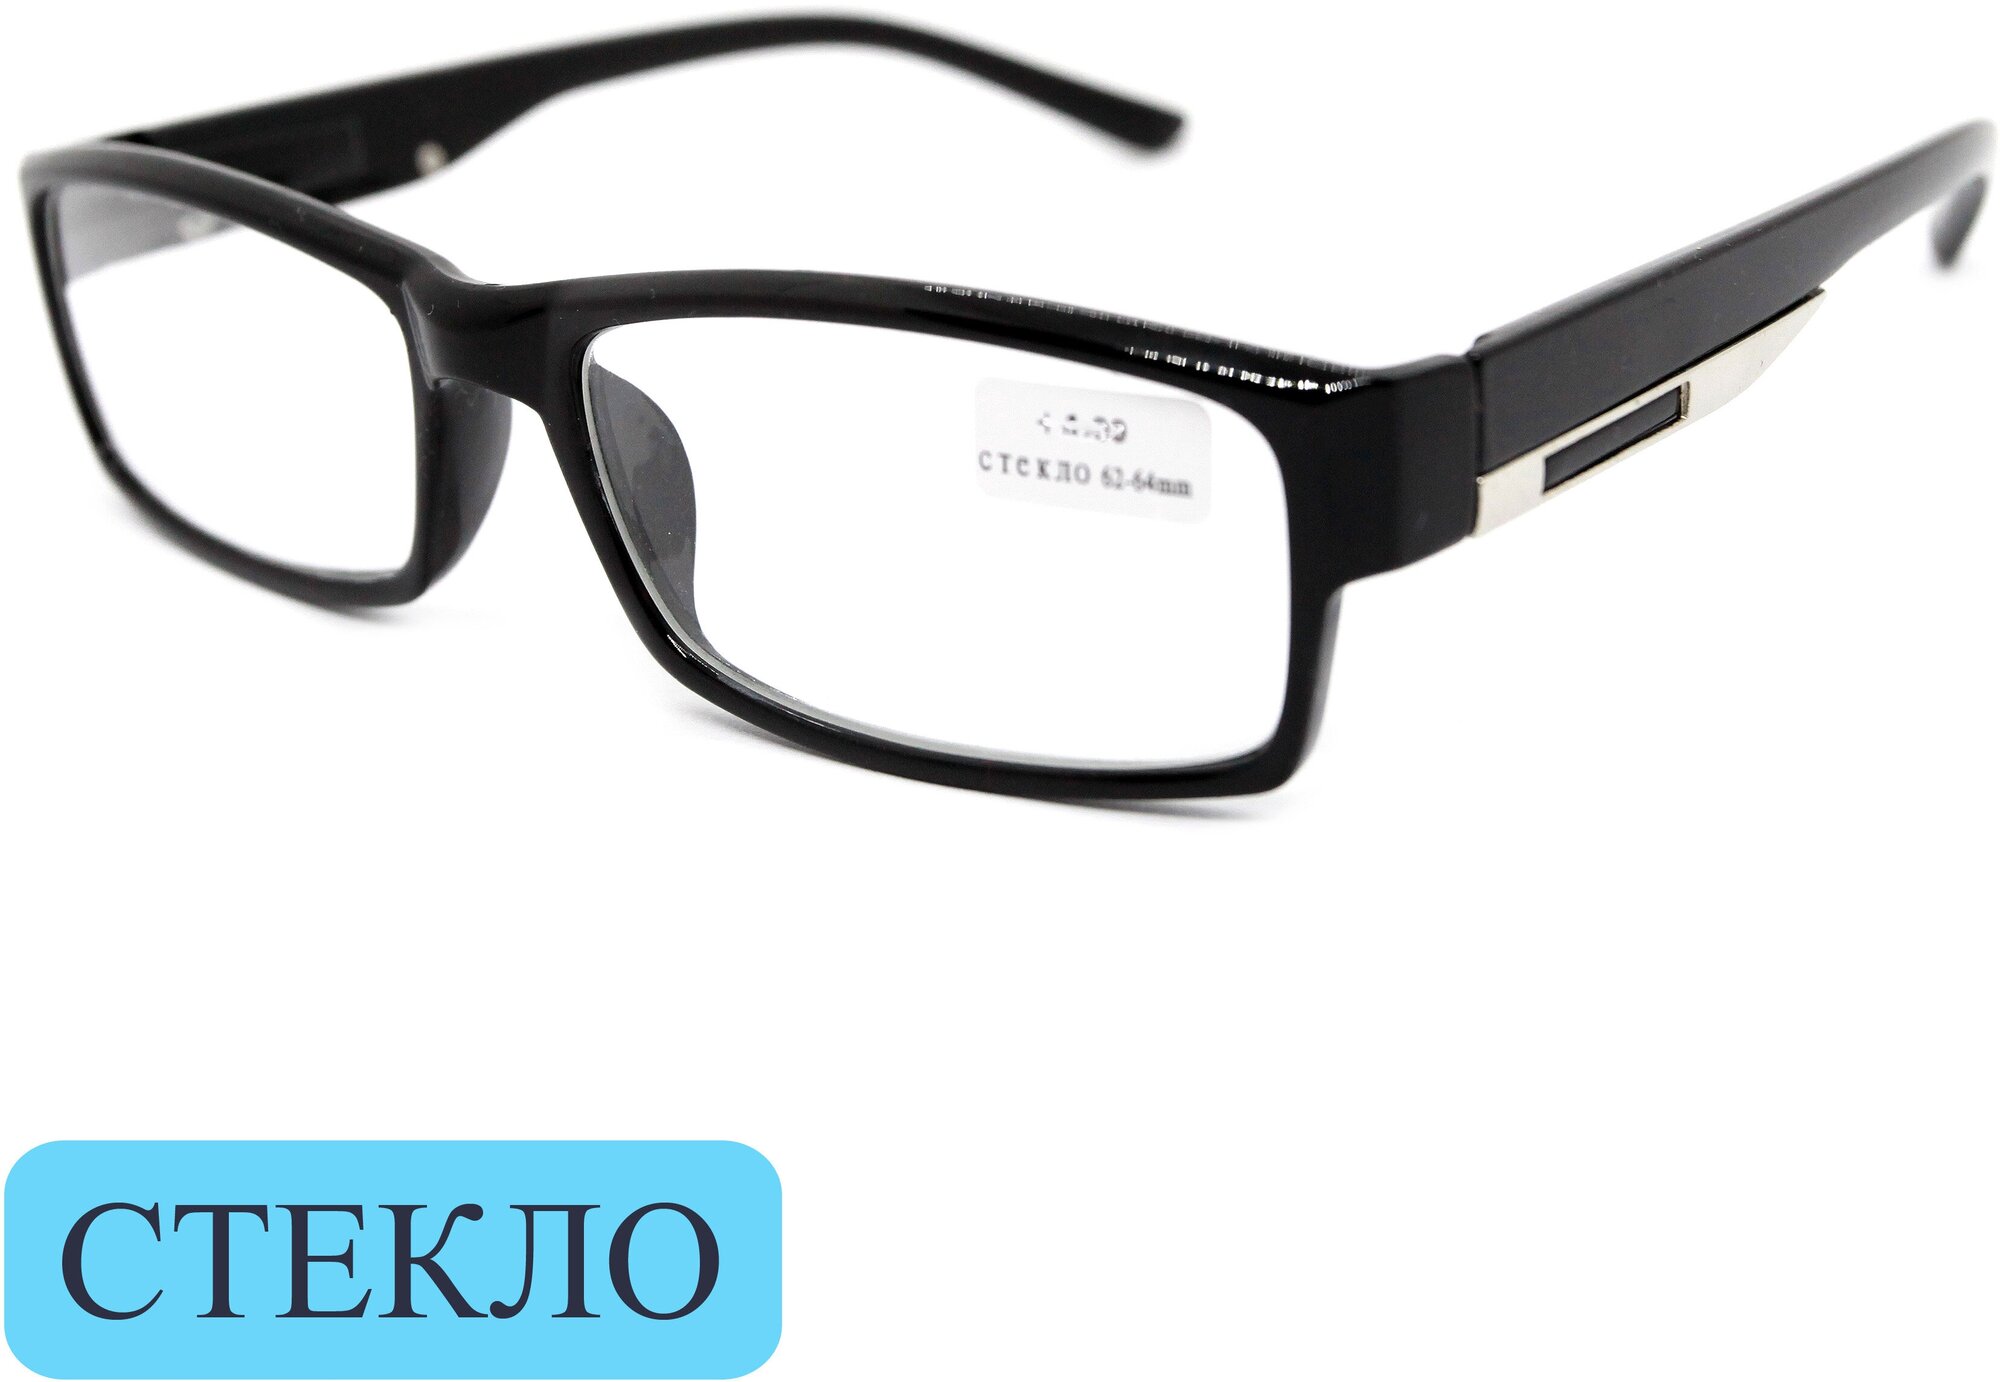 Корригирующие очки для чтения (+1.50) восток 6613, линза стекло, цвет черный, РЦ 62-64